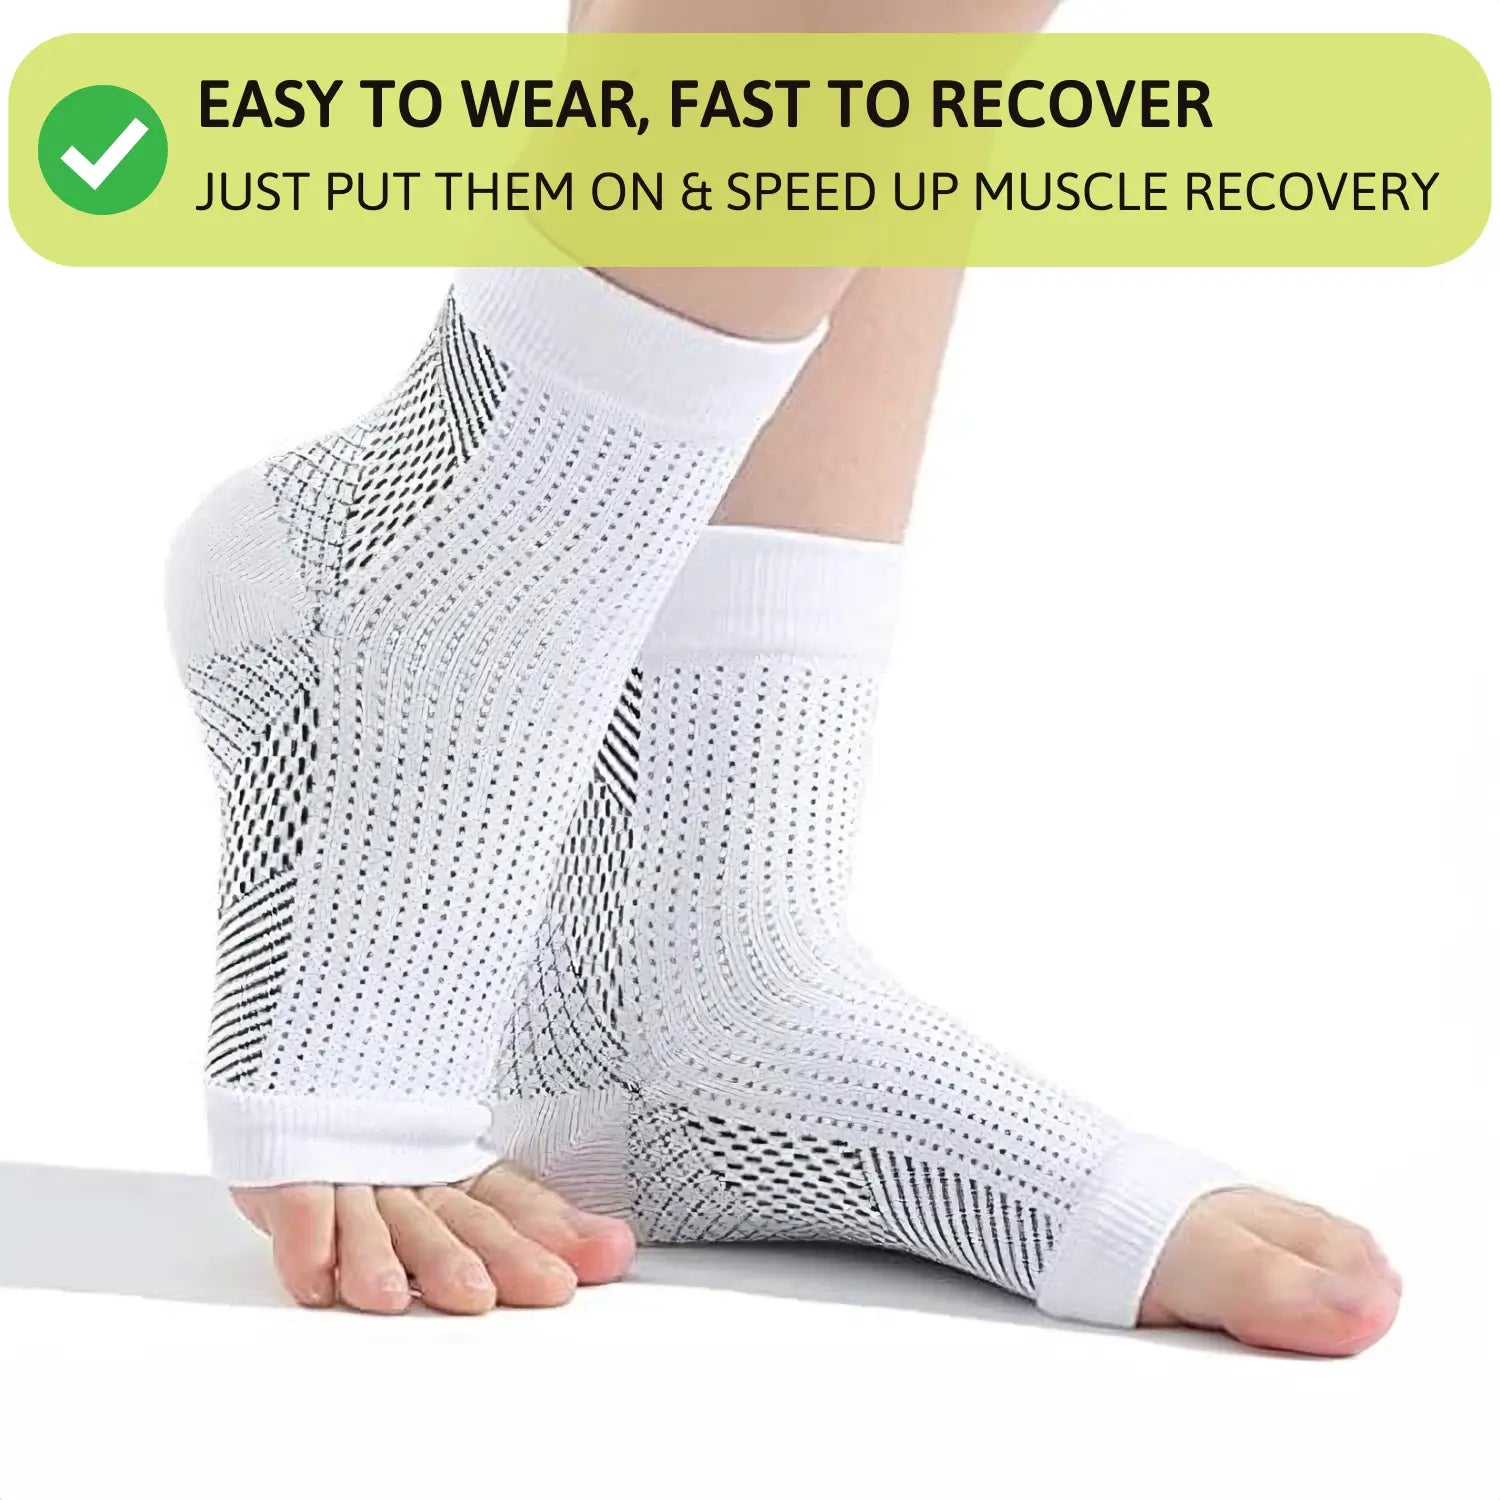 OrthoSocks - Orthopedic Compression Socks for Light Feet (3 PAIR)